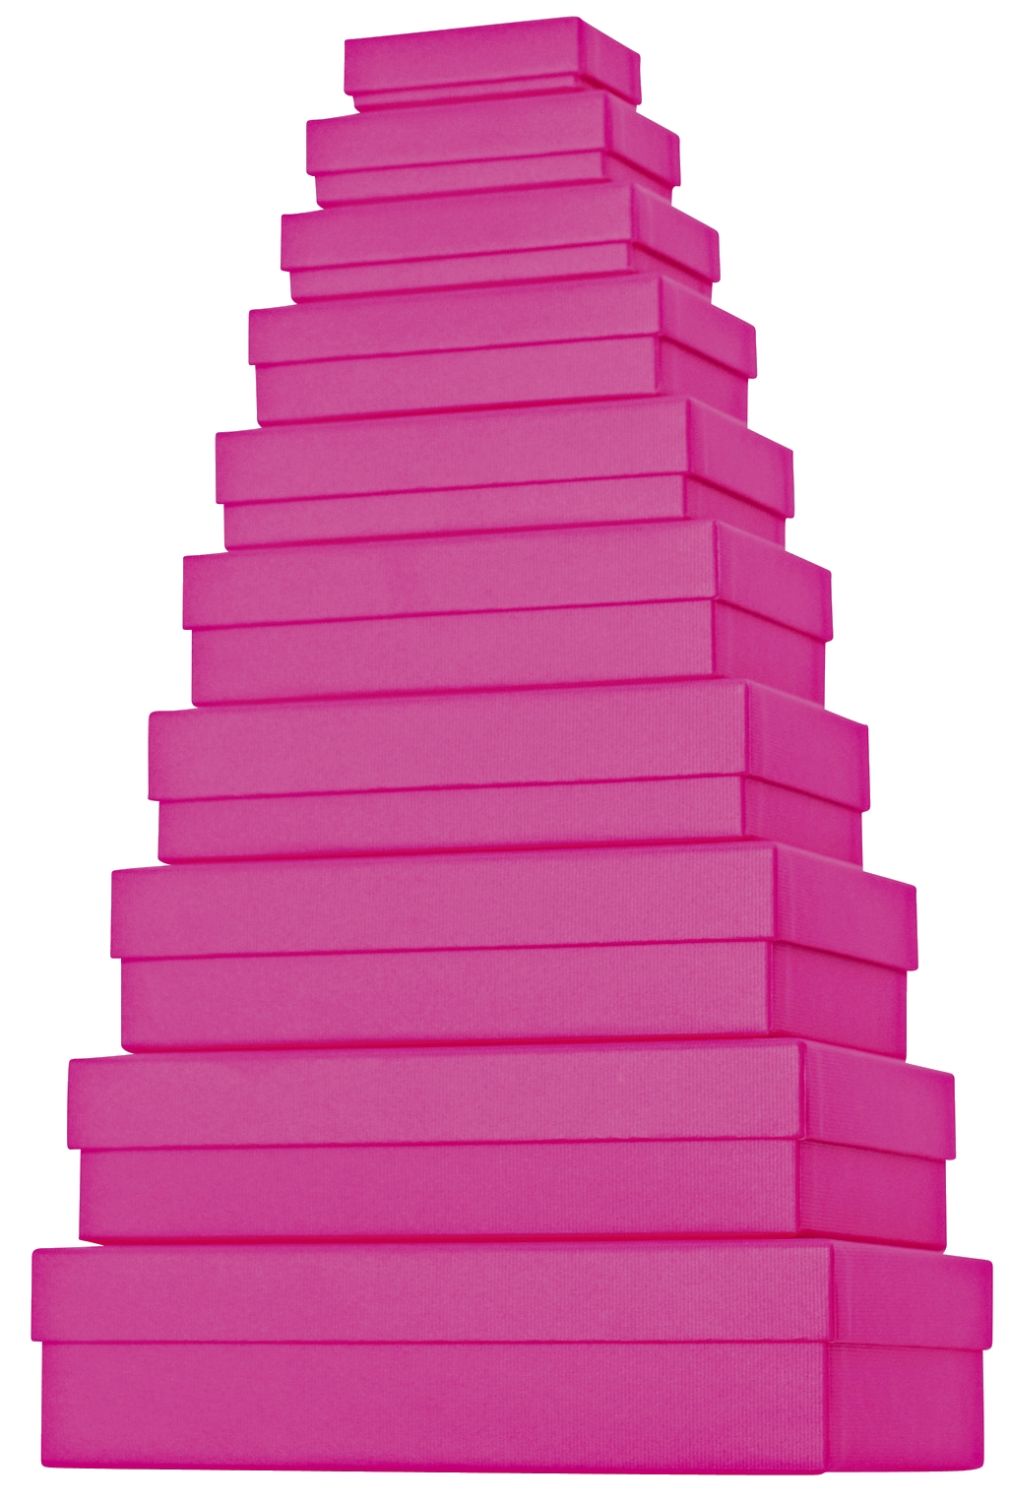 Geschenkkarton - 10 tlg., flach, pink